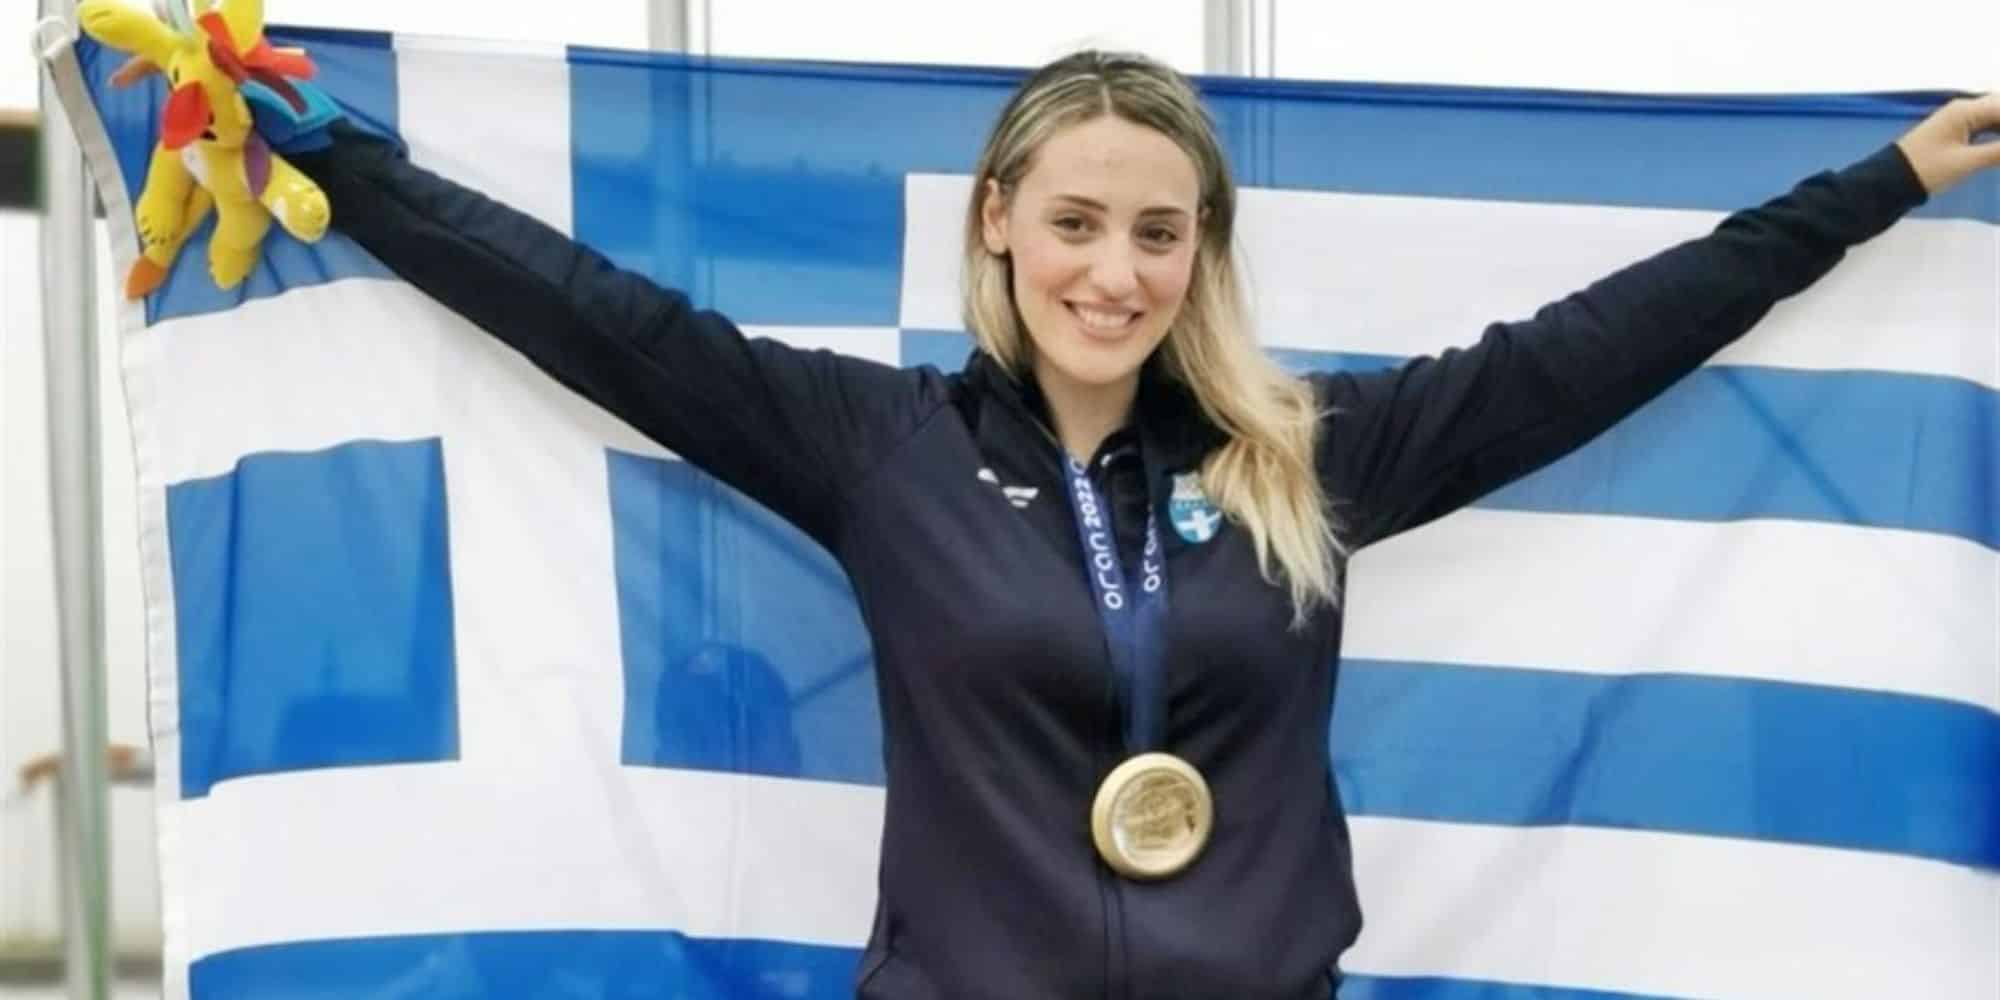 Η Άννα Κορακάκη με το μετάλλιο και την ελληνική σημαία